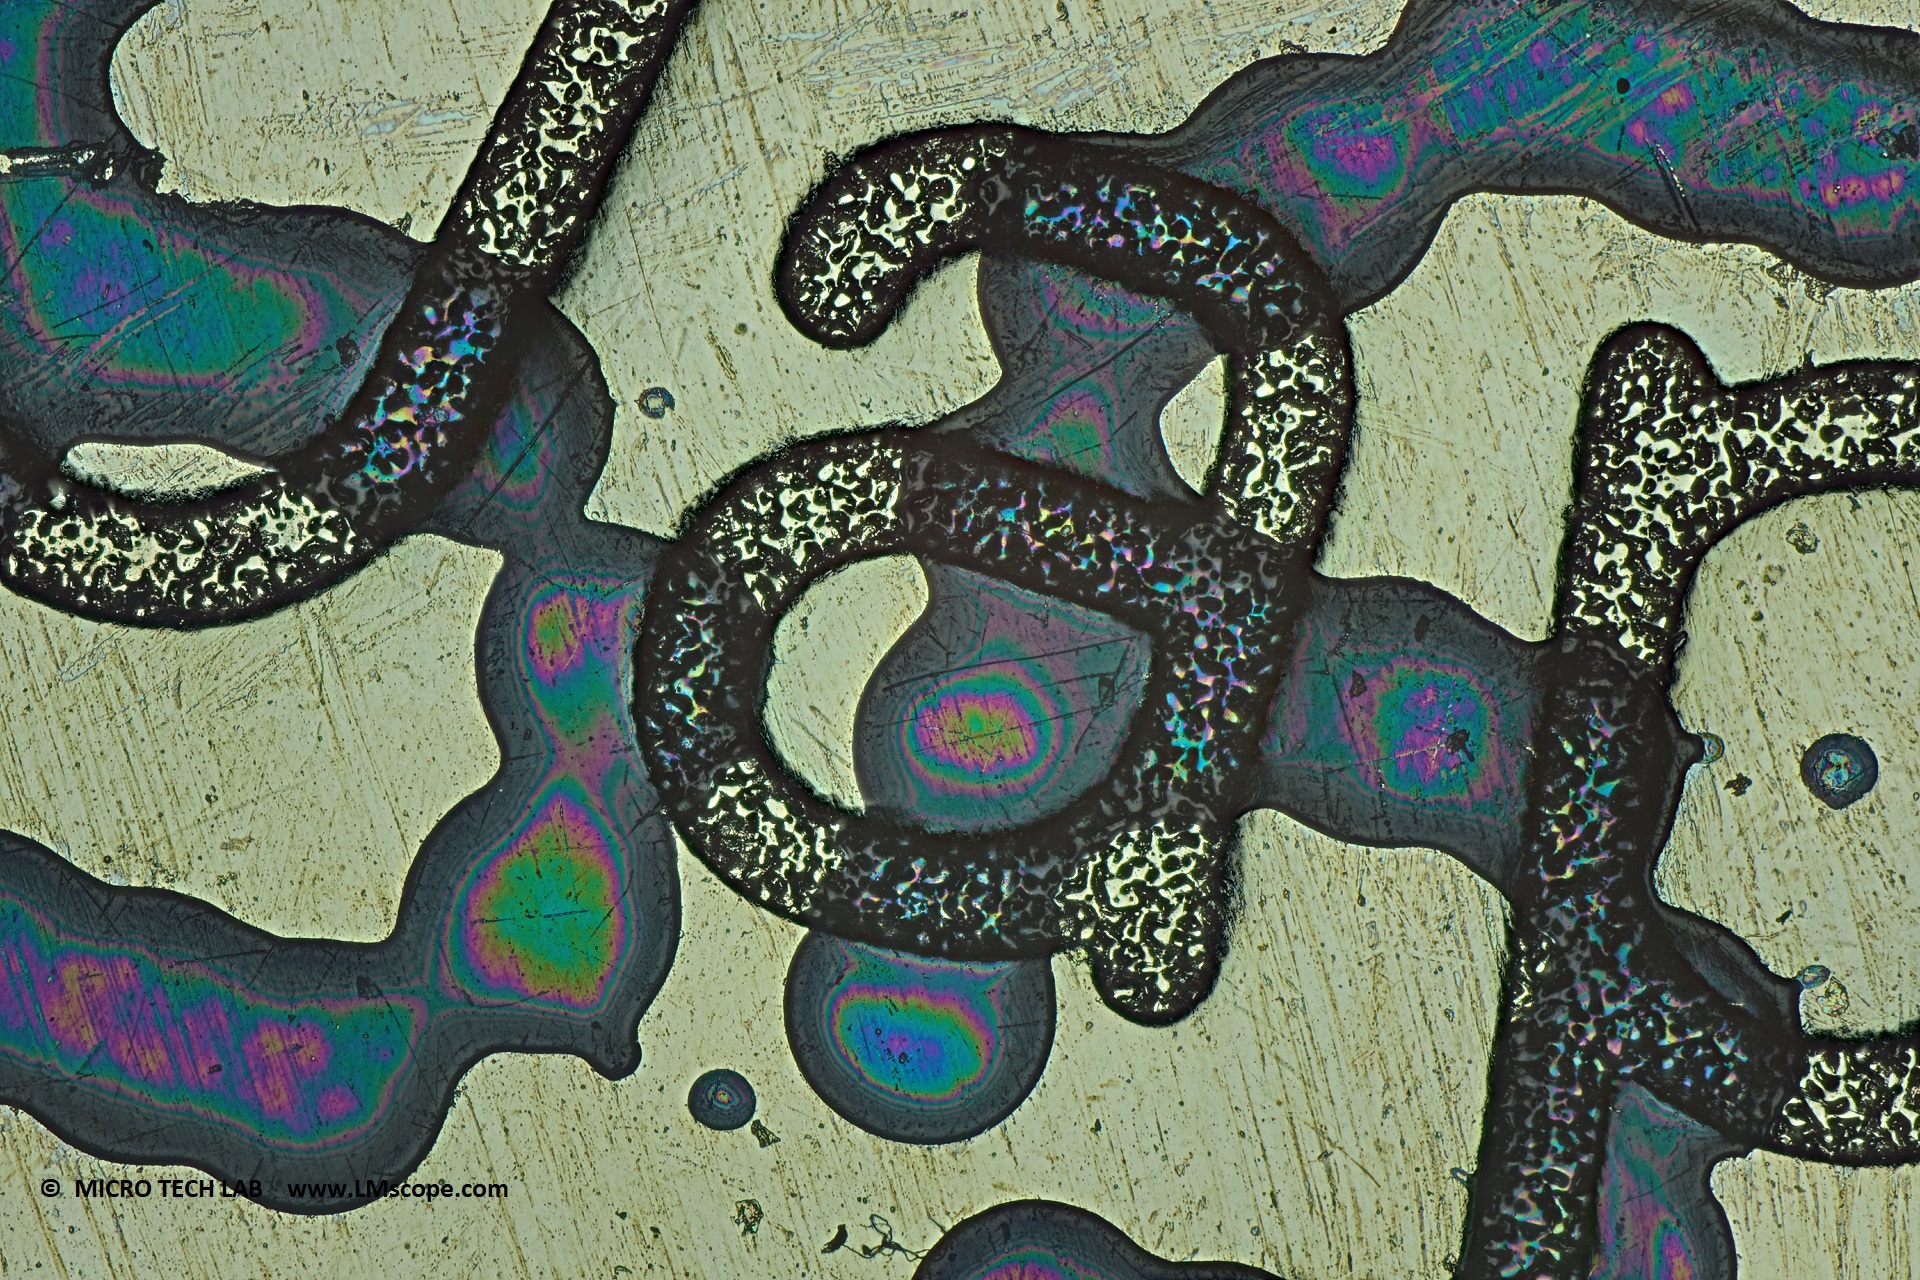 Lithium Knopfzelle unter dem Mikroskop